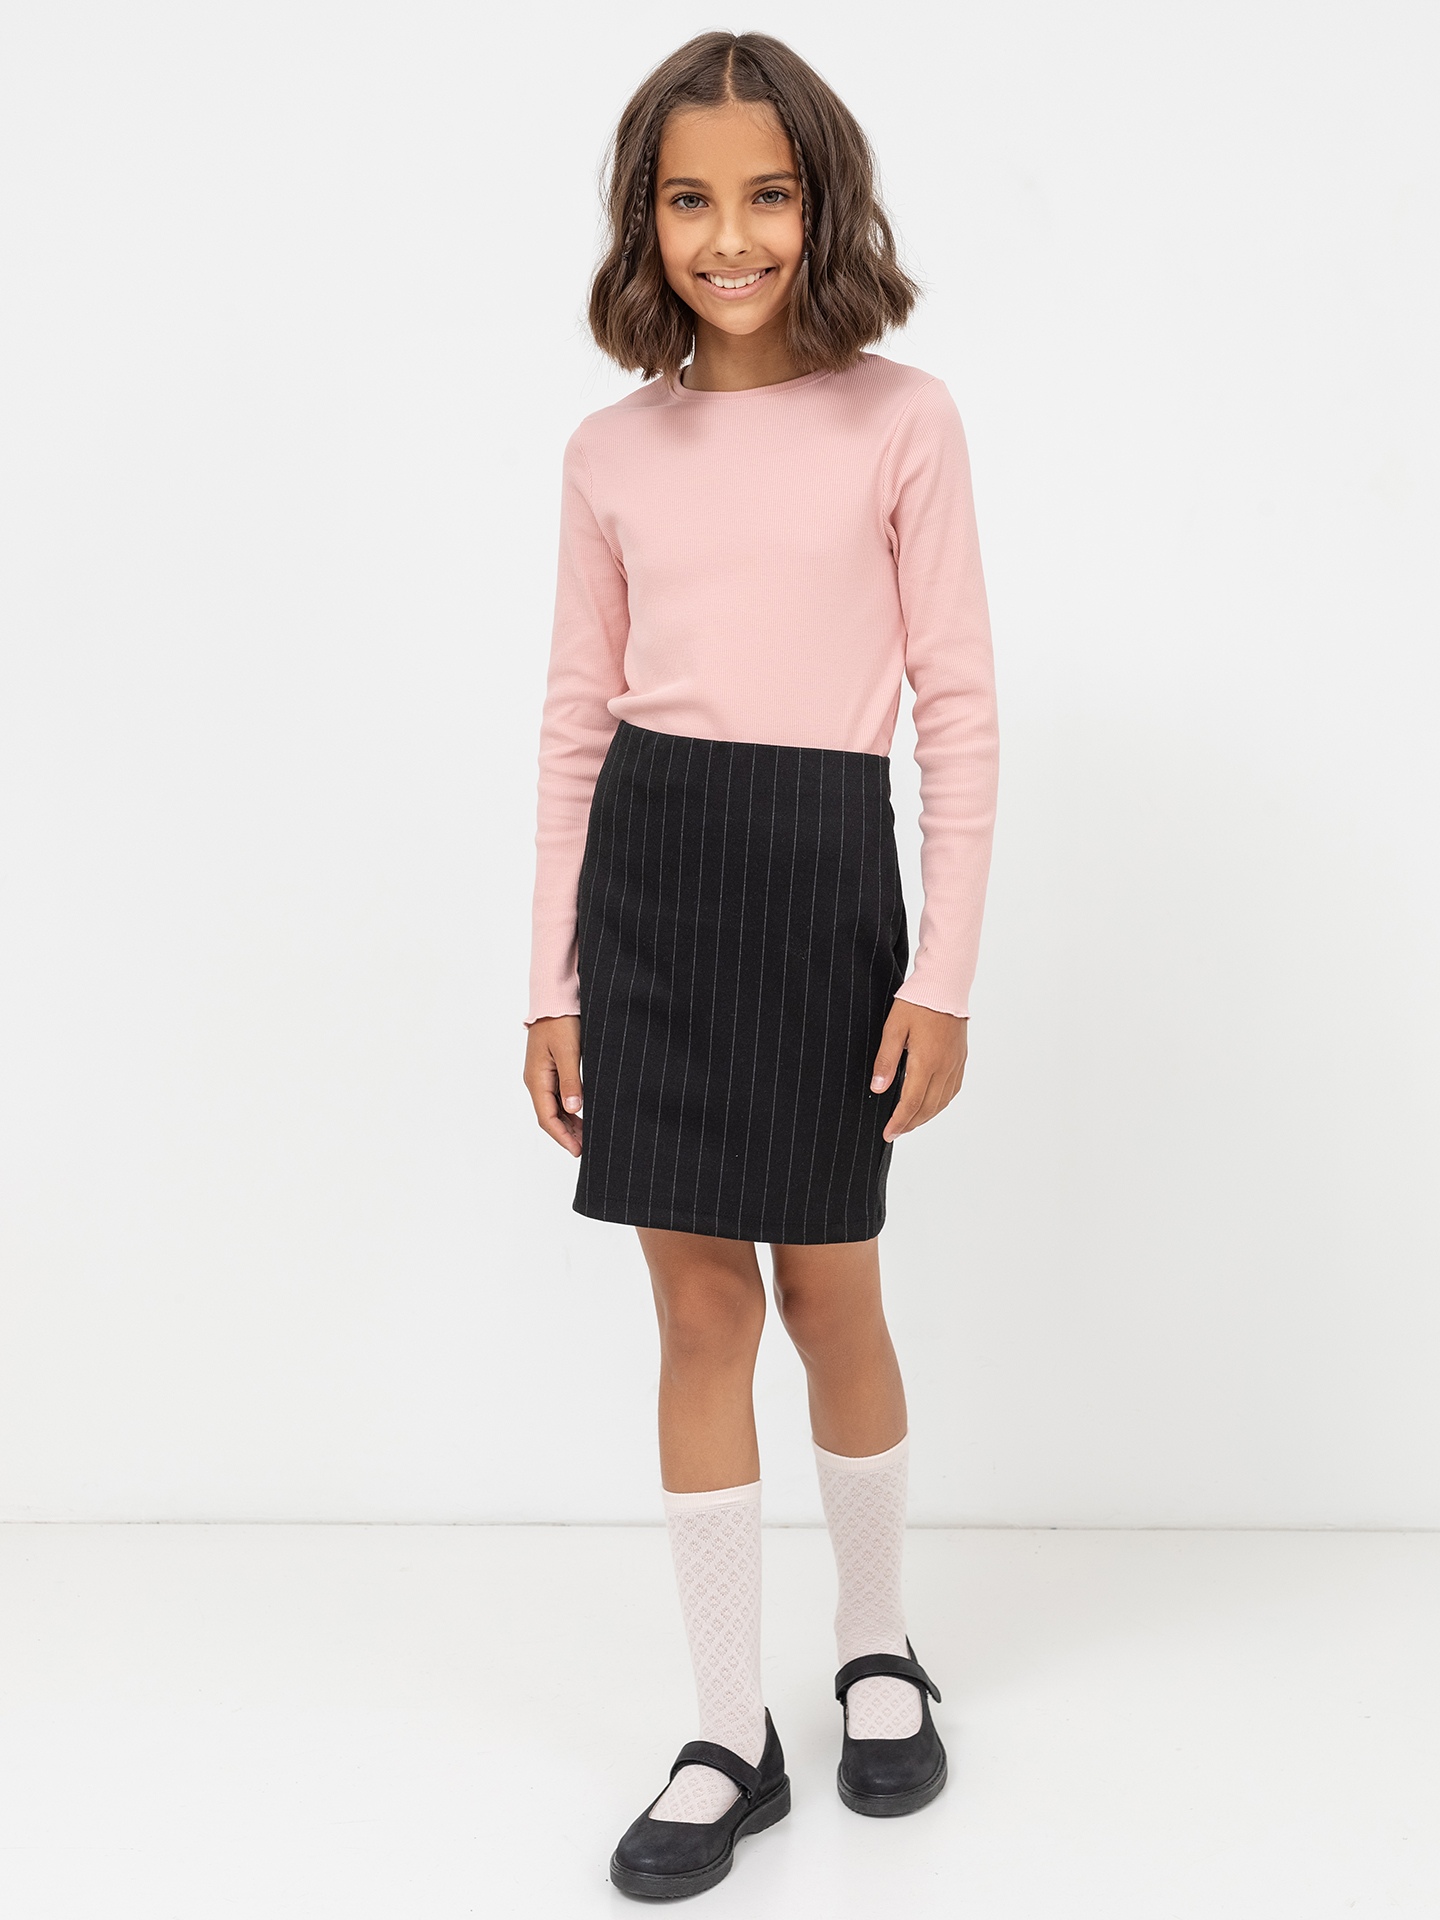 Зауженная юбка-карандаш черного цвета в тонкую полоску для девочек